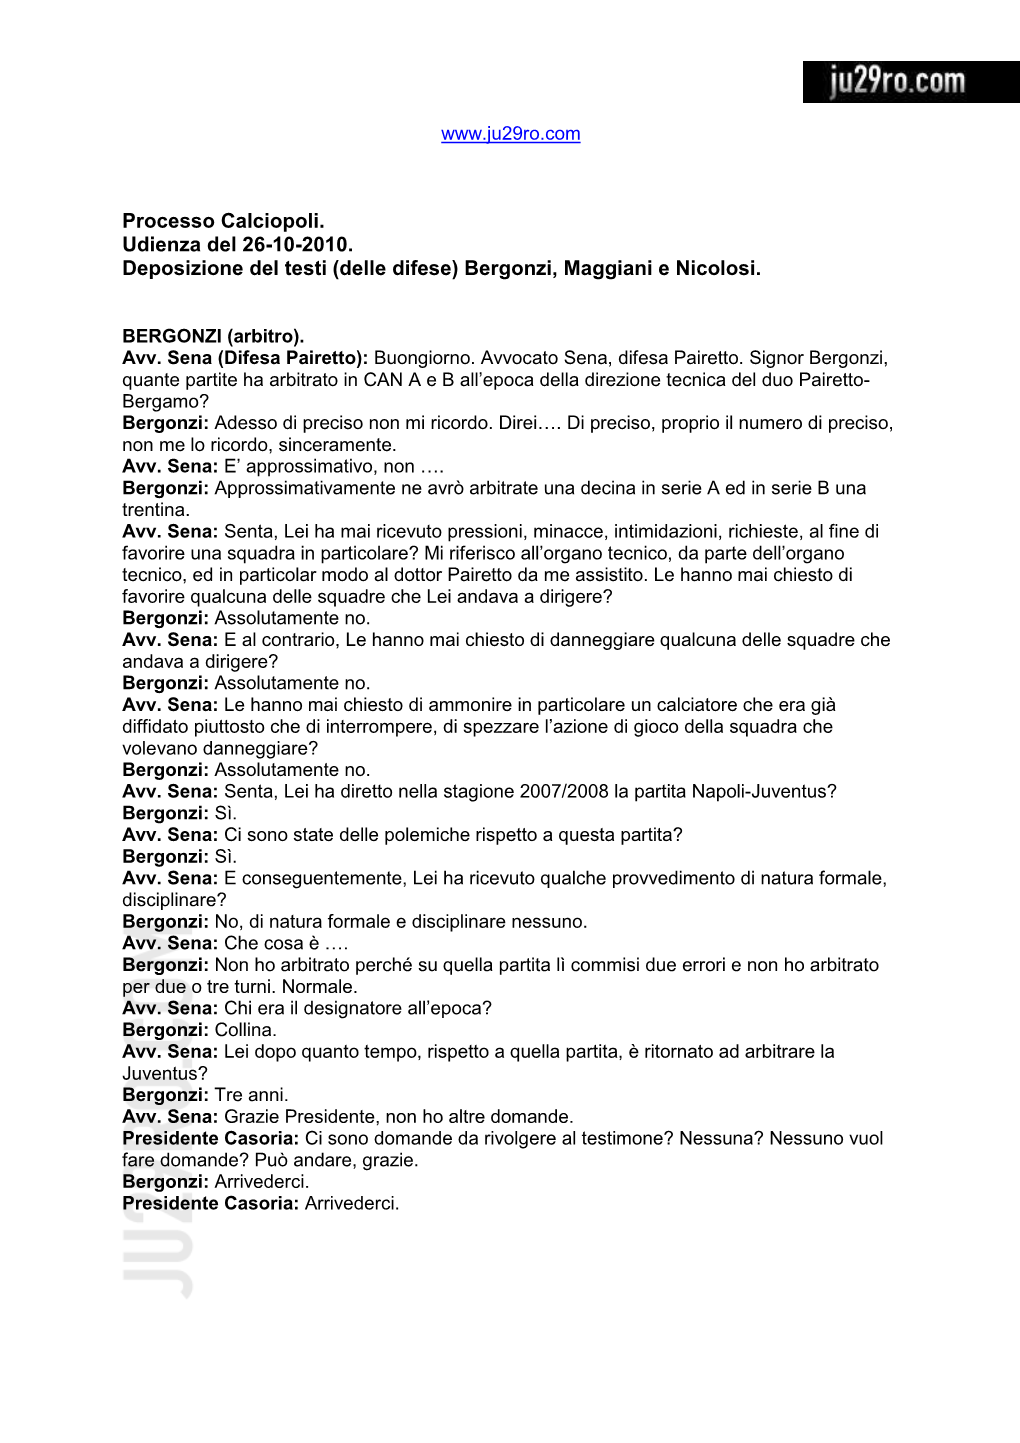 Processo Calciopoli. Udienza Del 26-10-2010. Deposizione Del Testi (Delle Difese) Bergonzi, Maggiani E Nicolosi